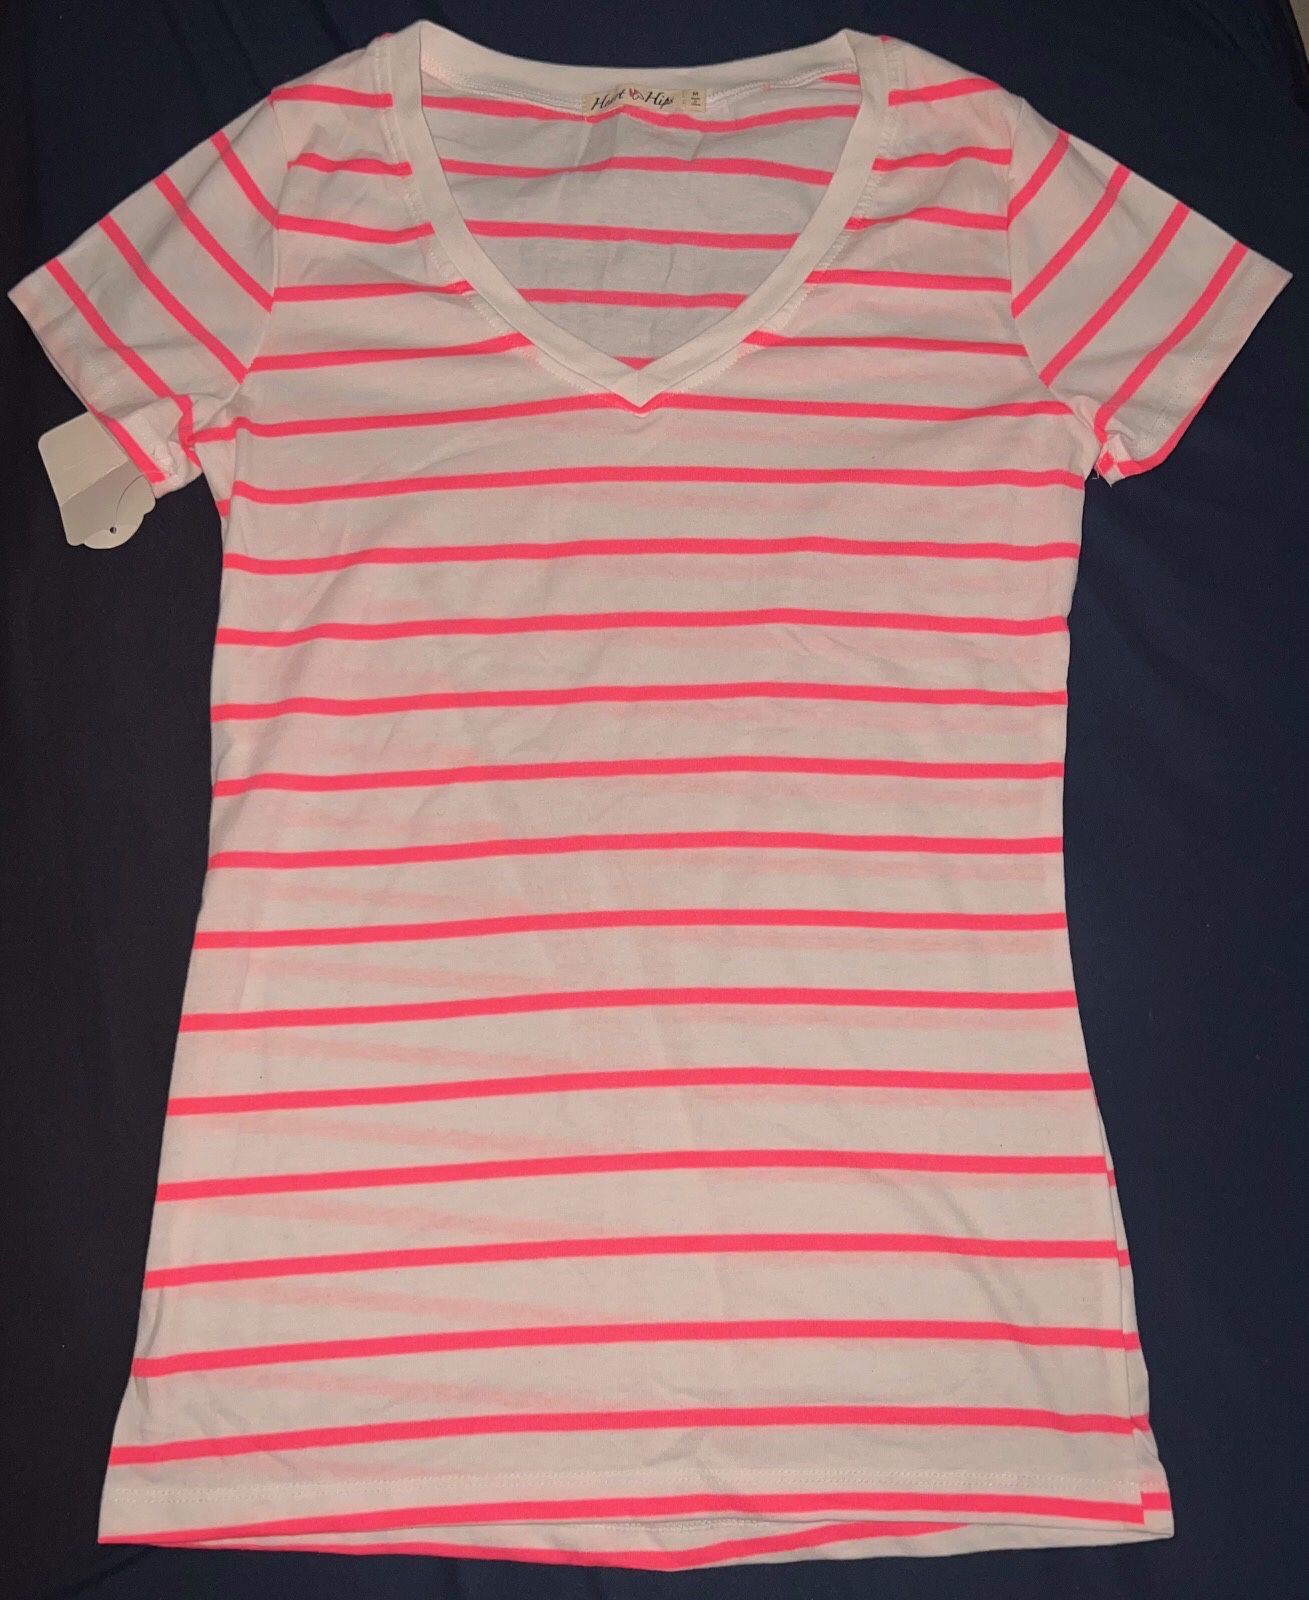 New White & Pink Stripe Medium Junior Shirt $8